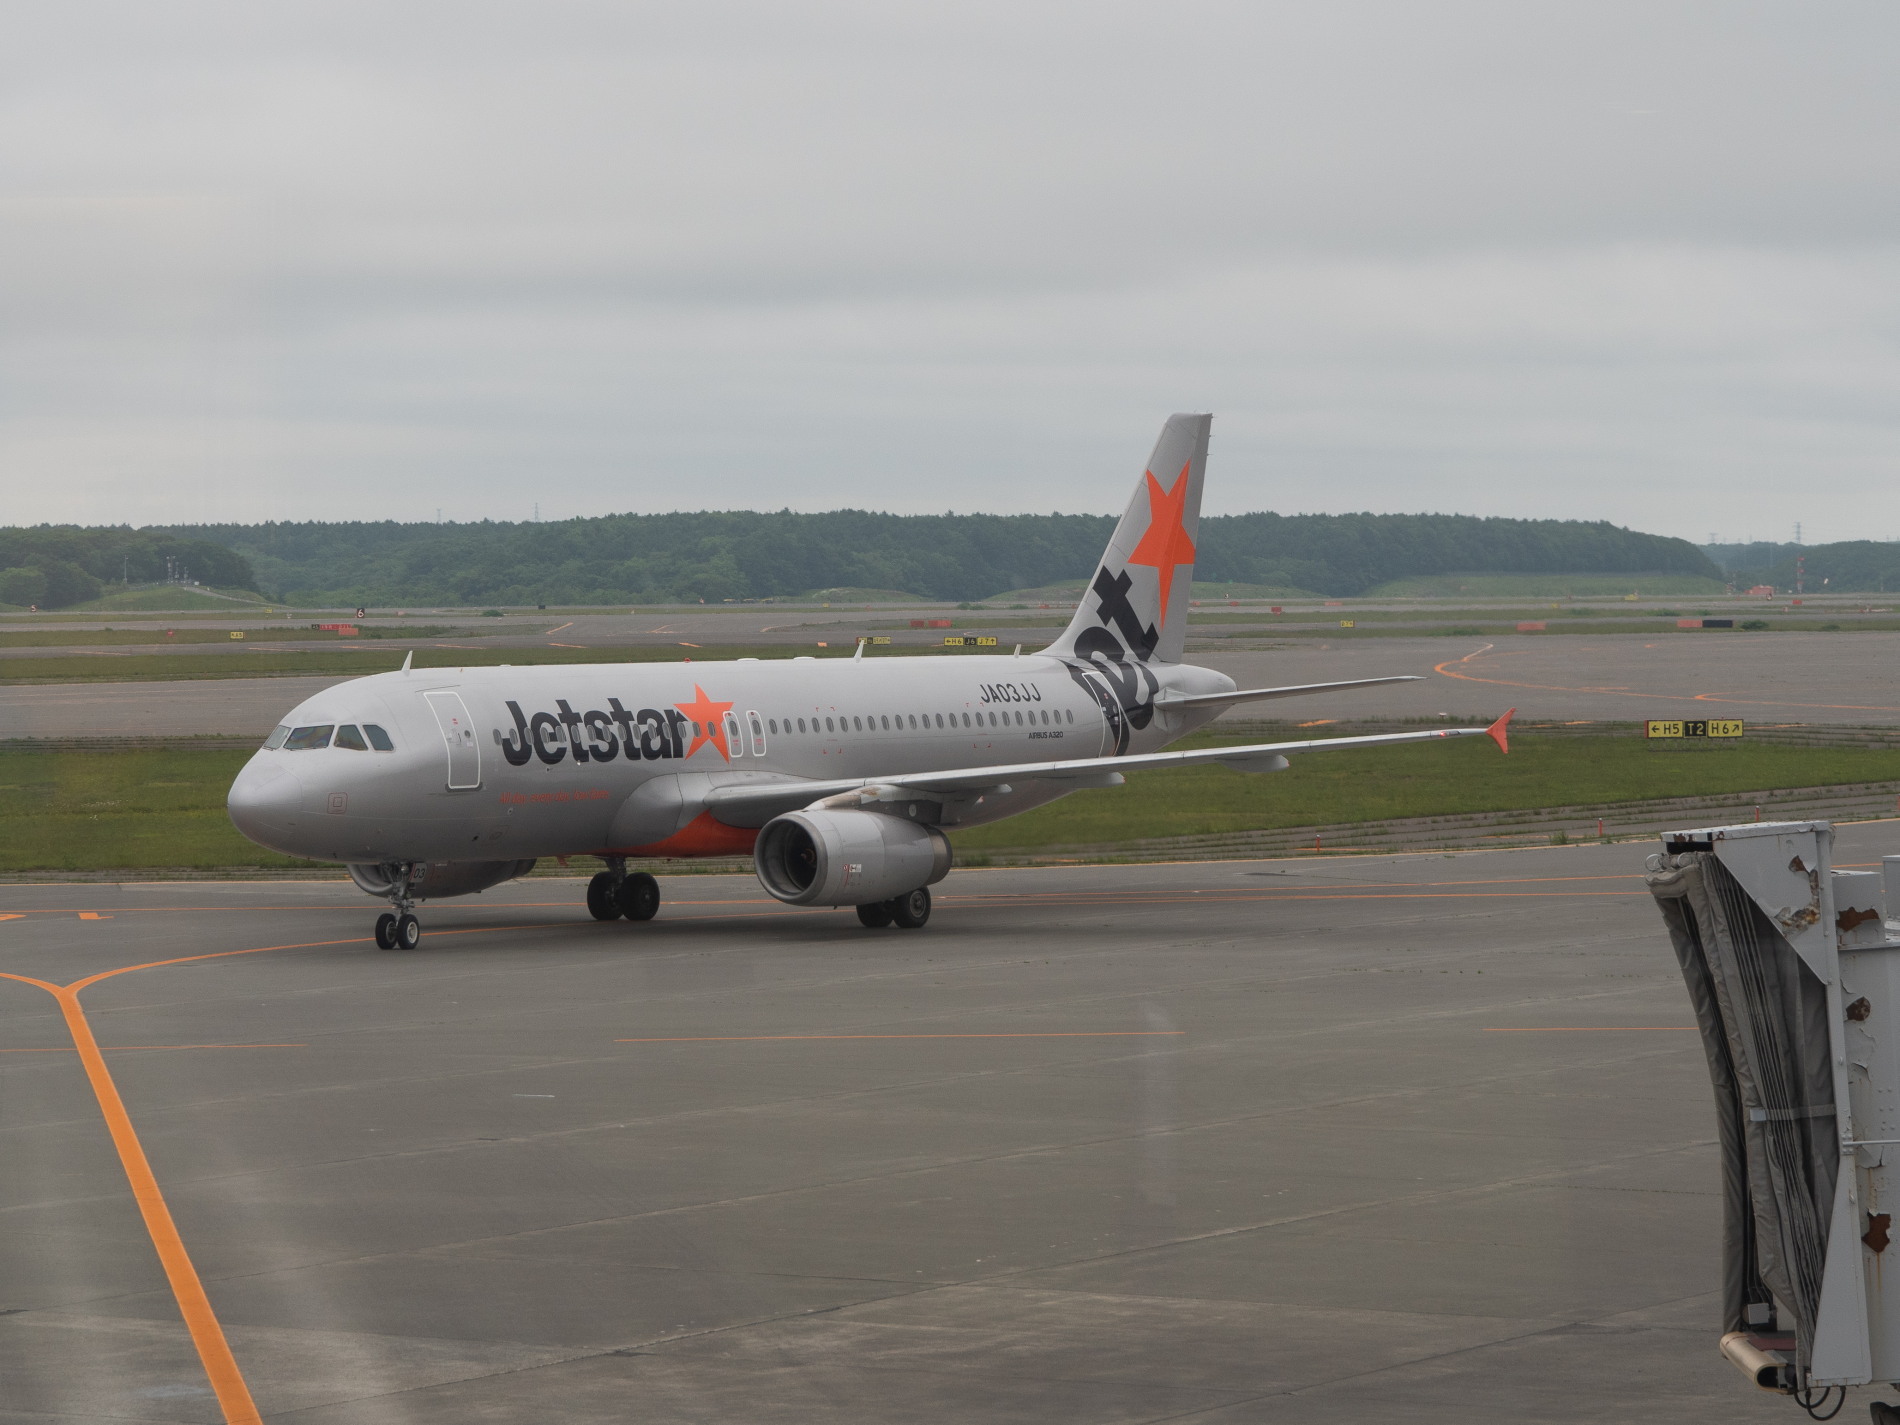 6月某日、ジェットスターで成田空港と航空機を見学(1)_f0276498_13223292.jpg